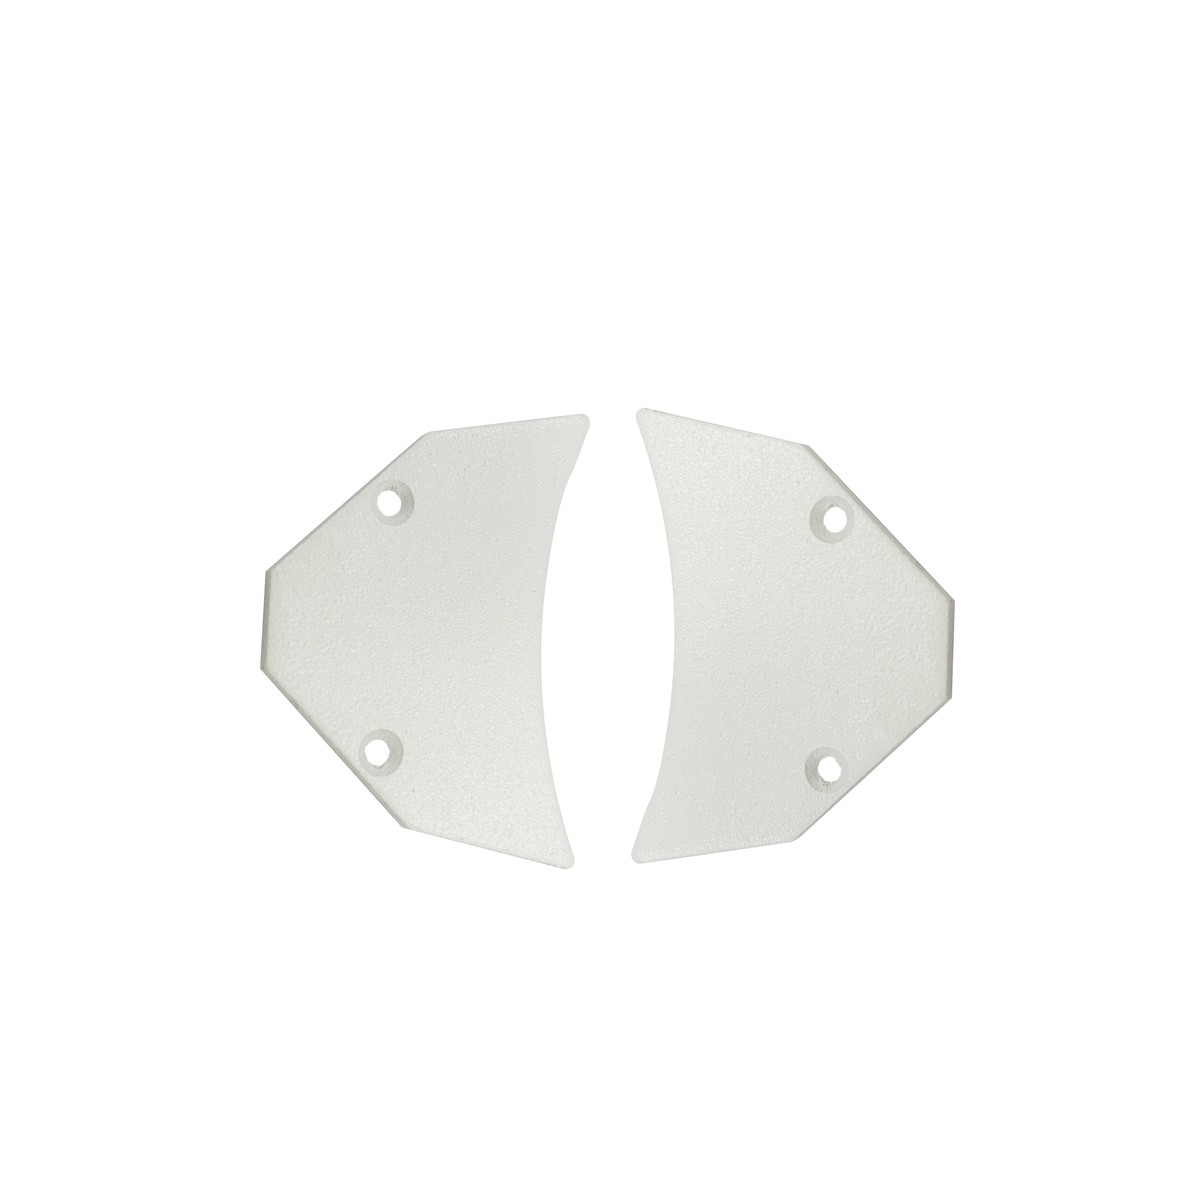 Tappi per profilo in alluminio doppia striscia LED - BPERFALP191